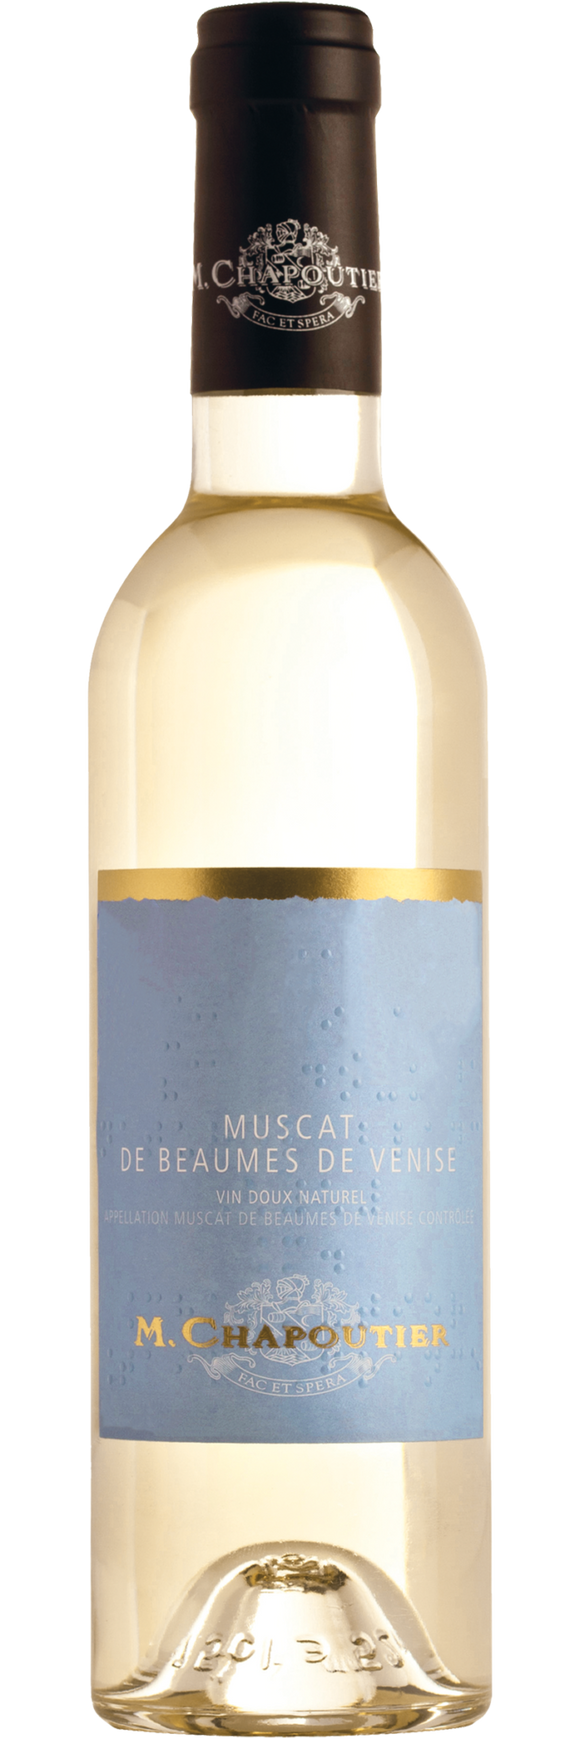 M Chapoutier, Muscat de Beaumes de Venise, 2018 (Half bottle)